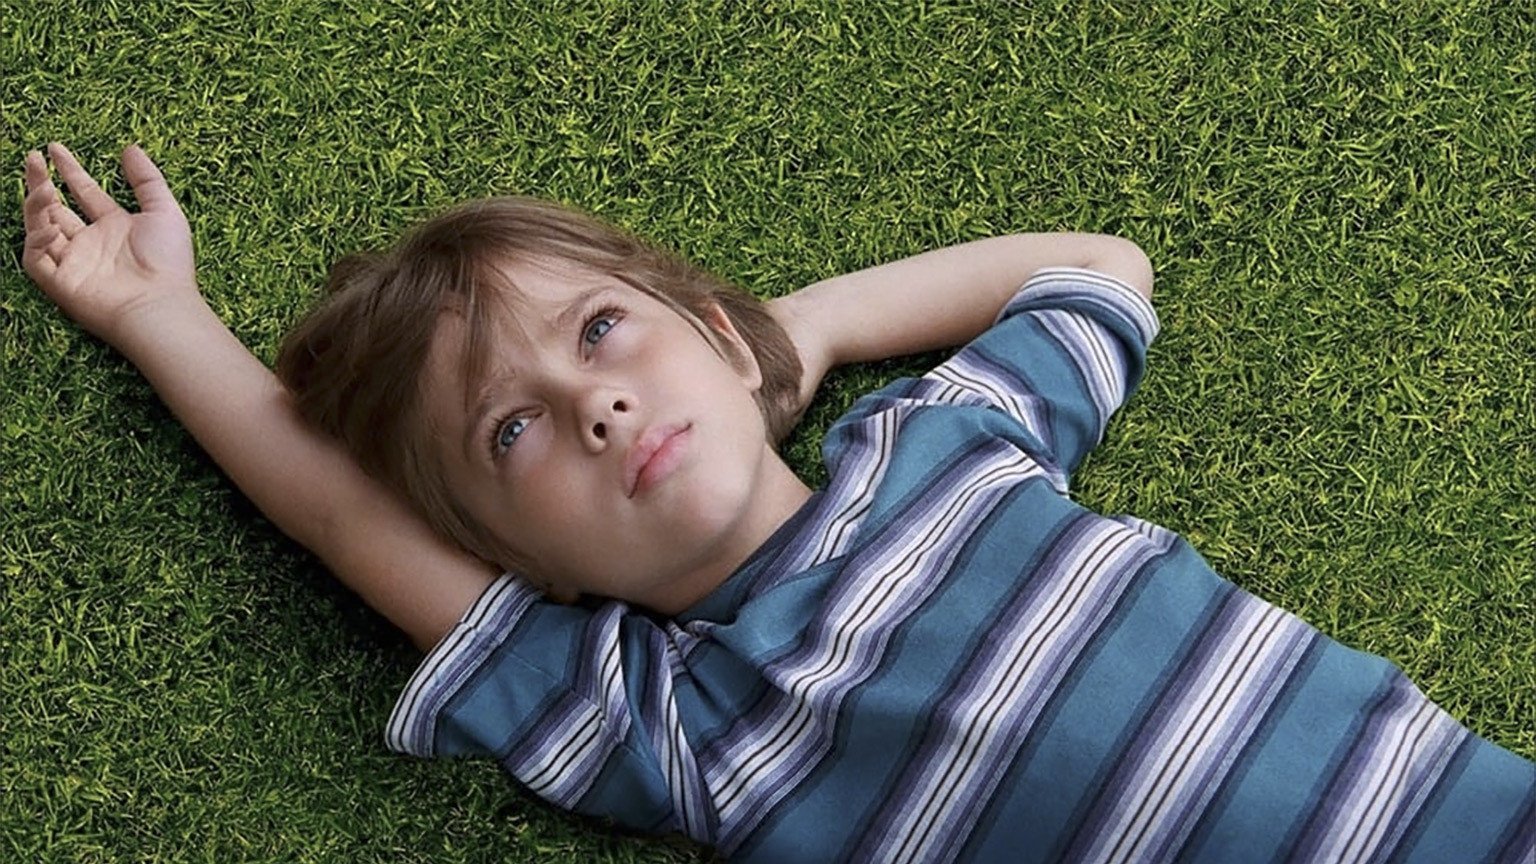 Vandaag kijk je met deze code gratis naar de Oscarwinnende film 'Boyhood' op Pathé Thuis